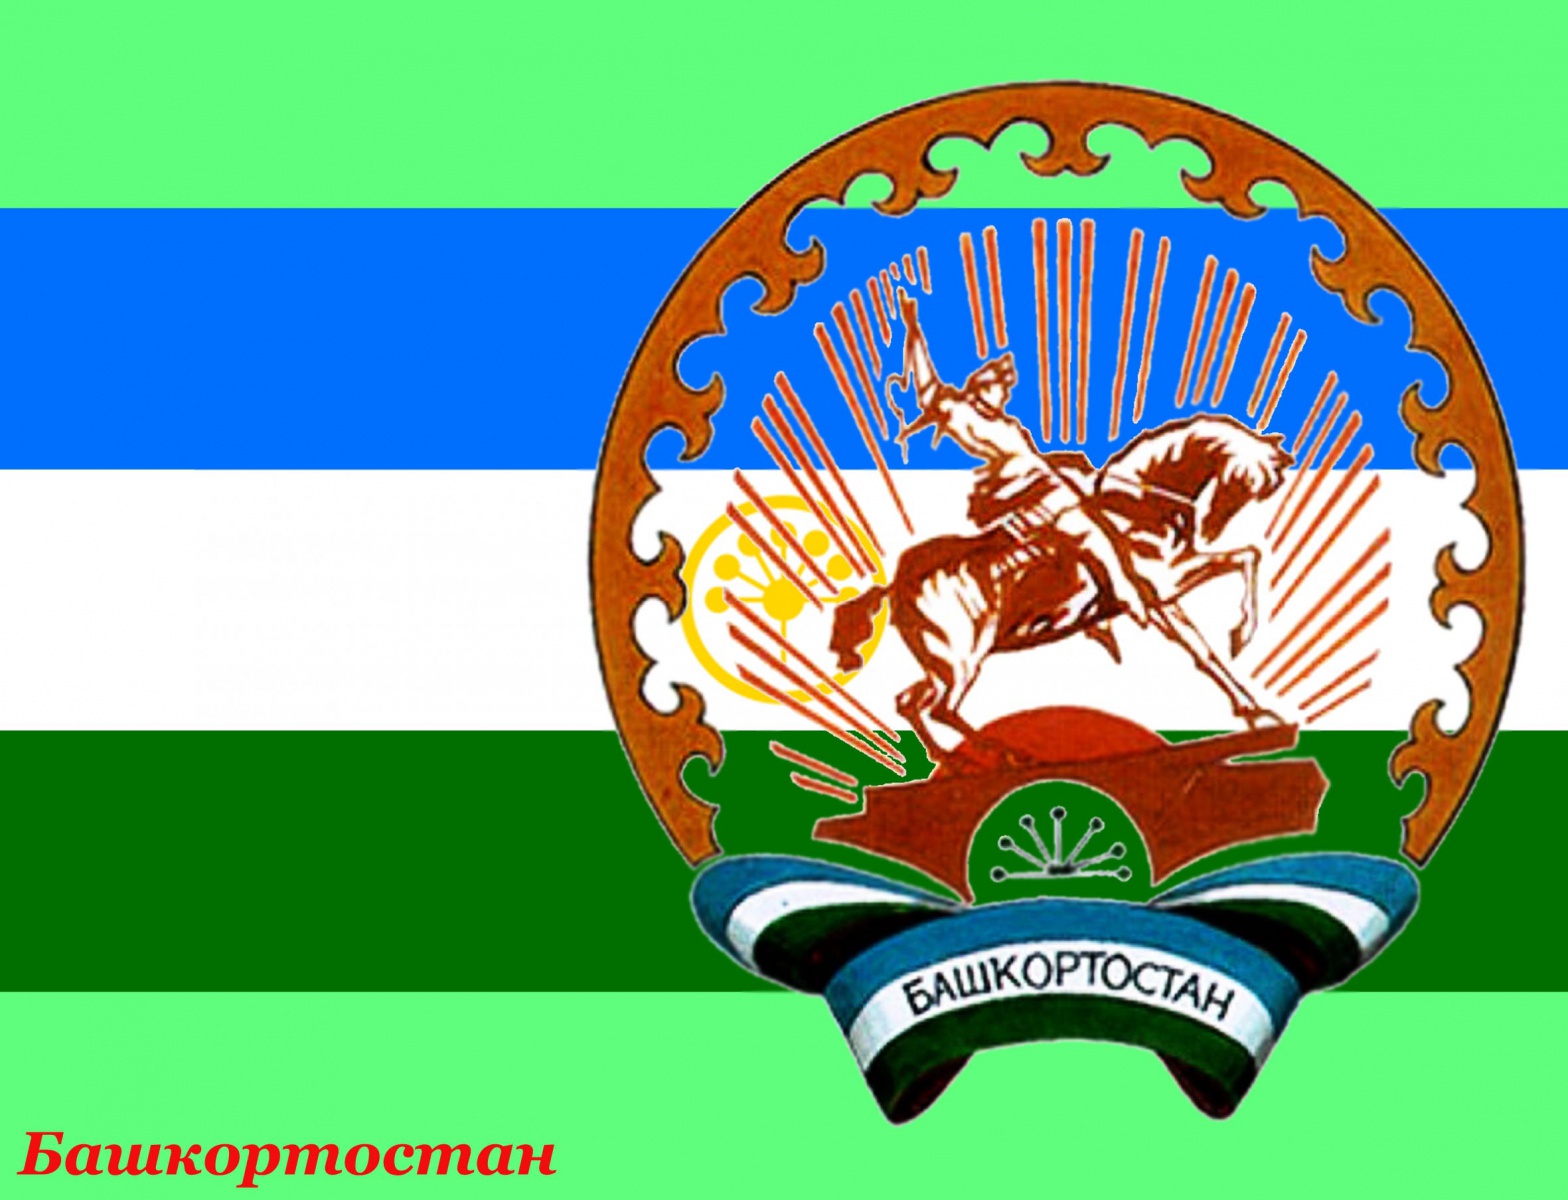 Герб Башкирии на флаге Башкирии